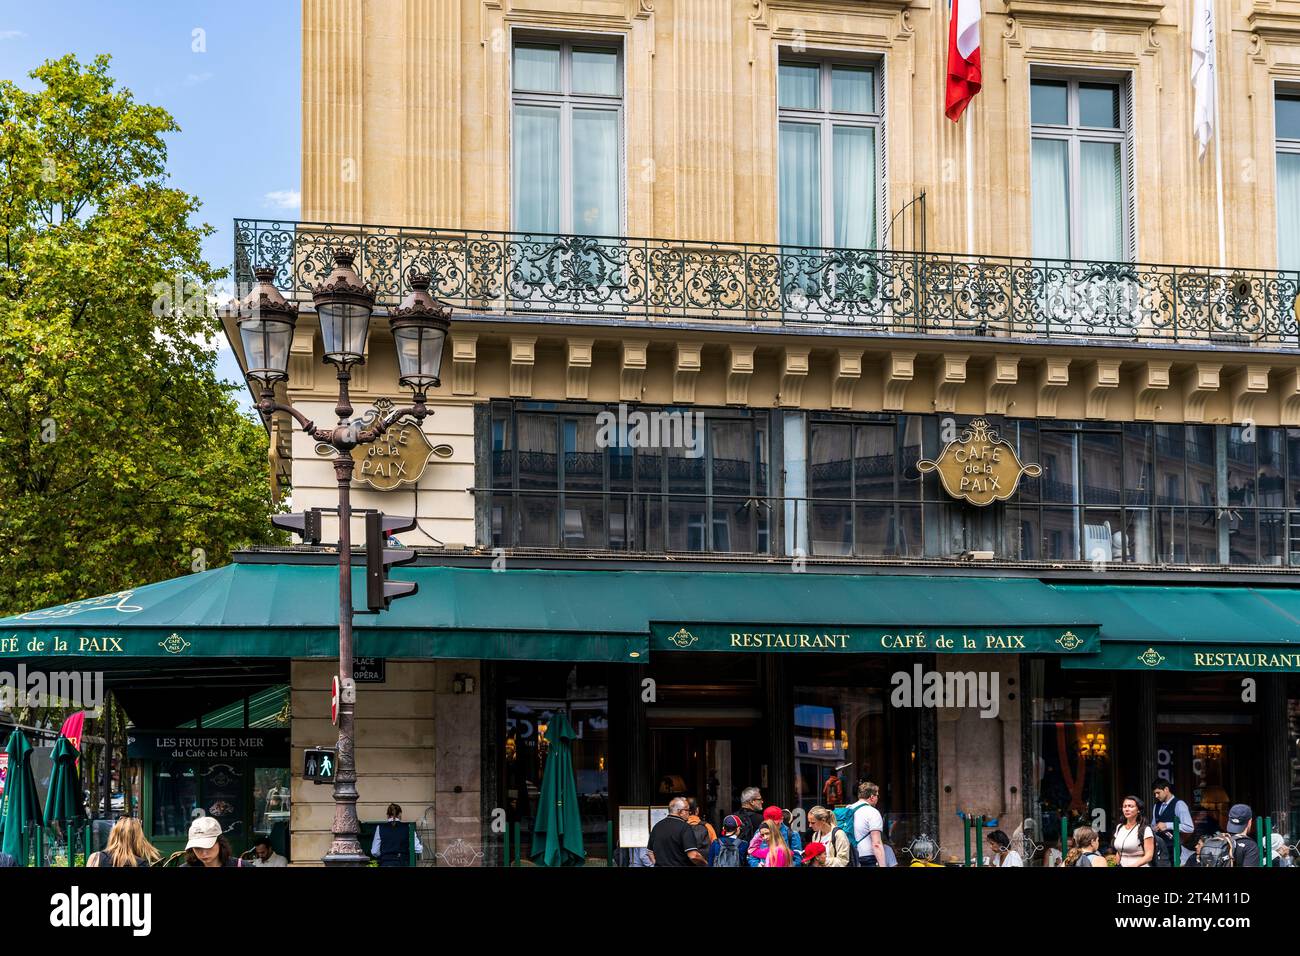 The façade of Café de la Paix, famous Parisian café and restaurant in place de l'Opéra, Paris city center, France Stock Photo